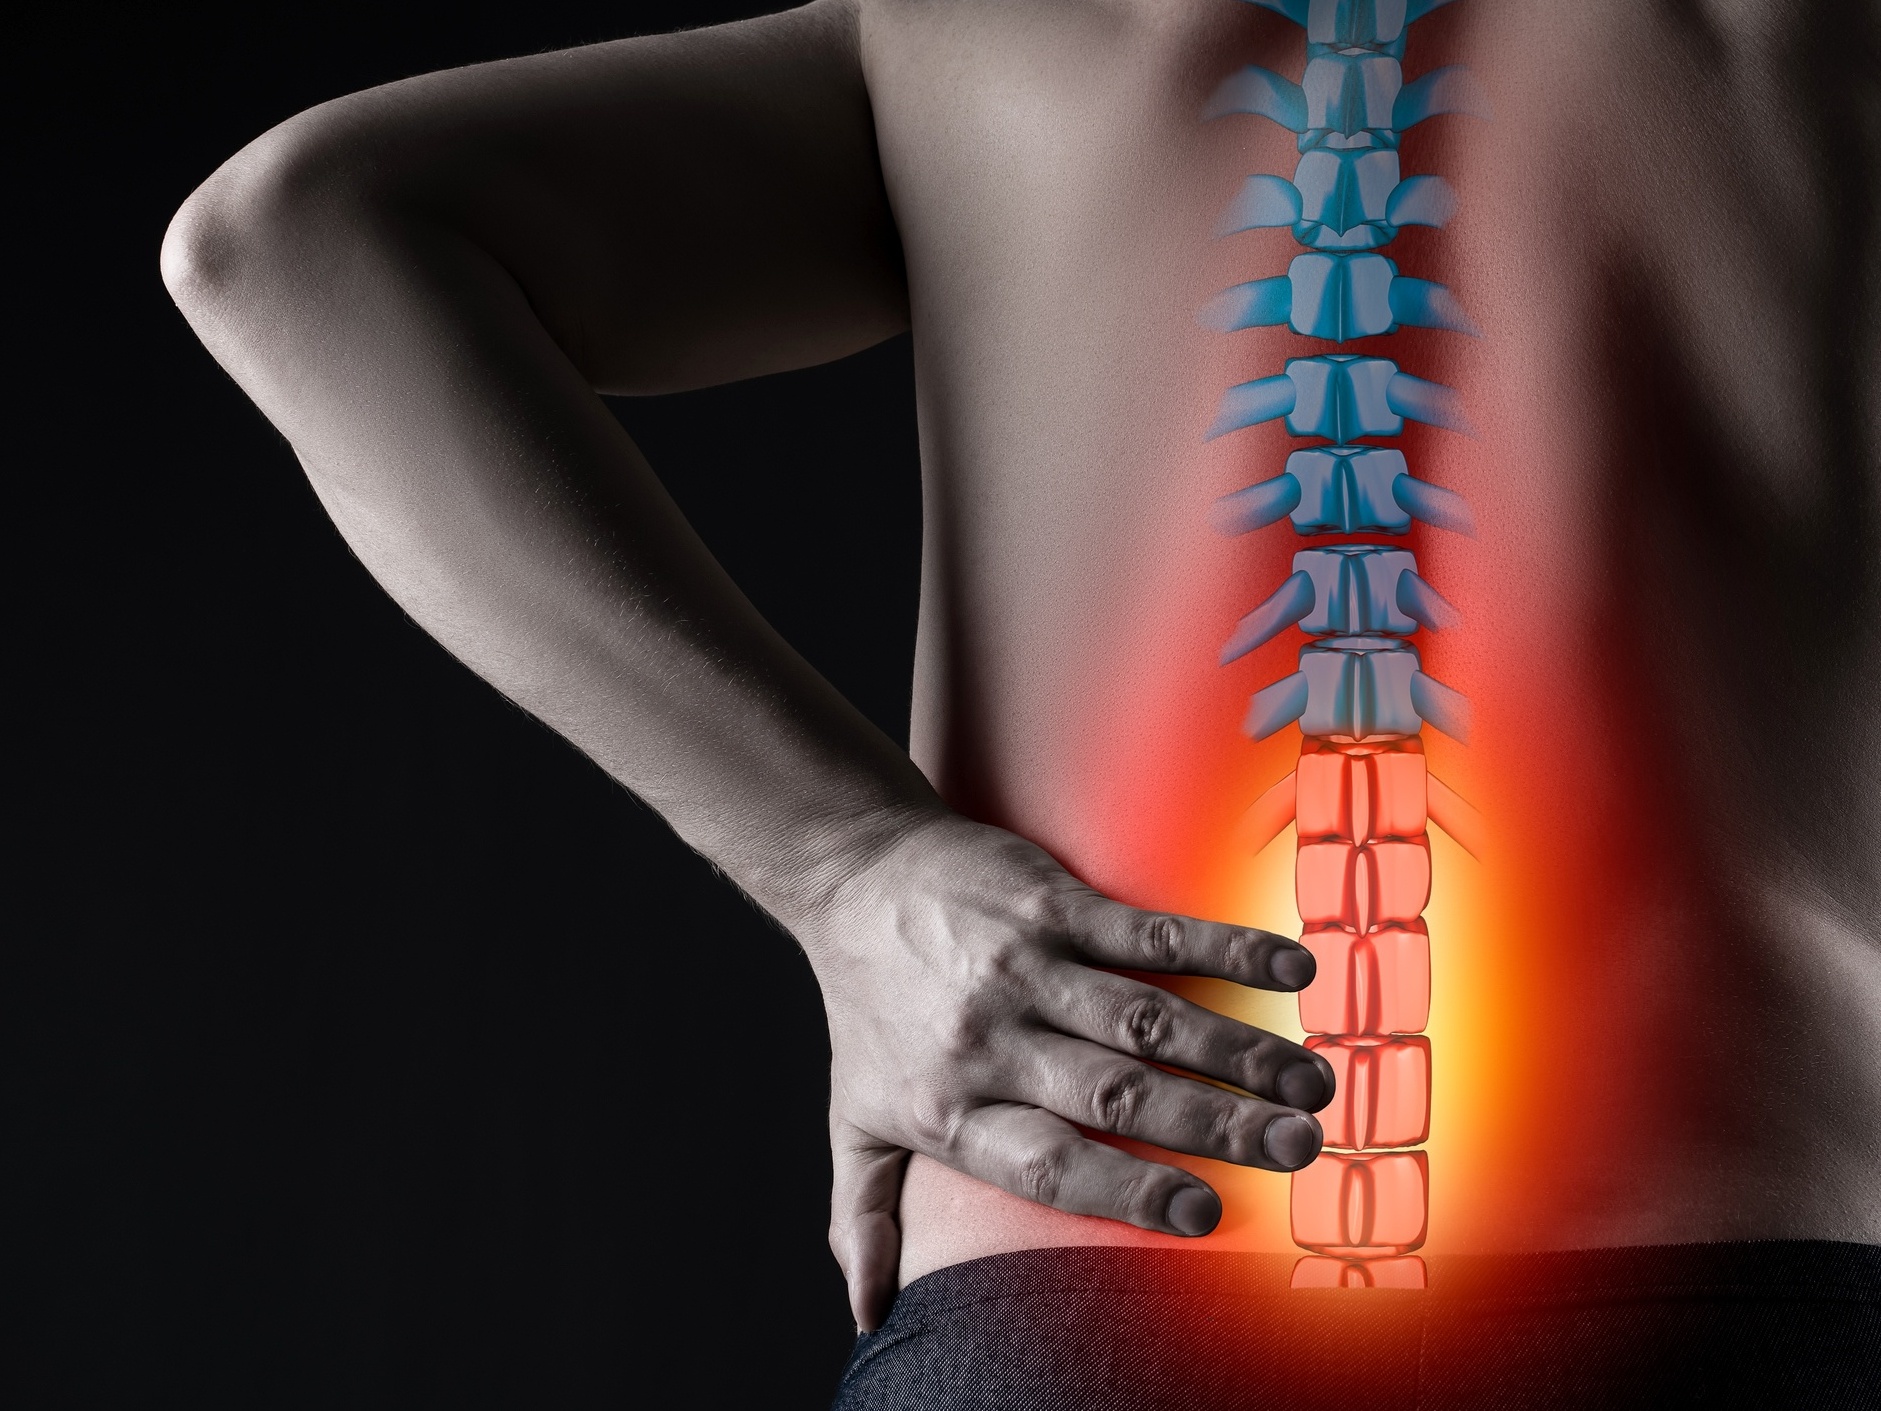 Hérnia de disco, pedra no rim, muscular: como diferenciar dores nas costas?  - 09/03/2022 - UOL VivaBem